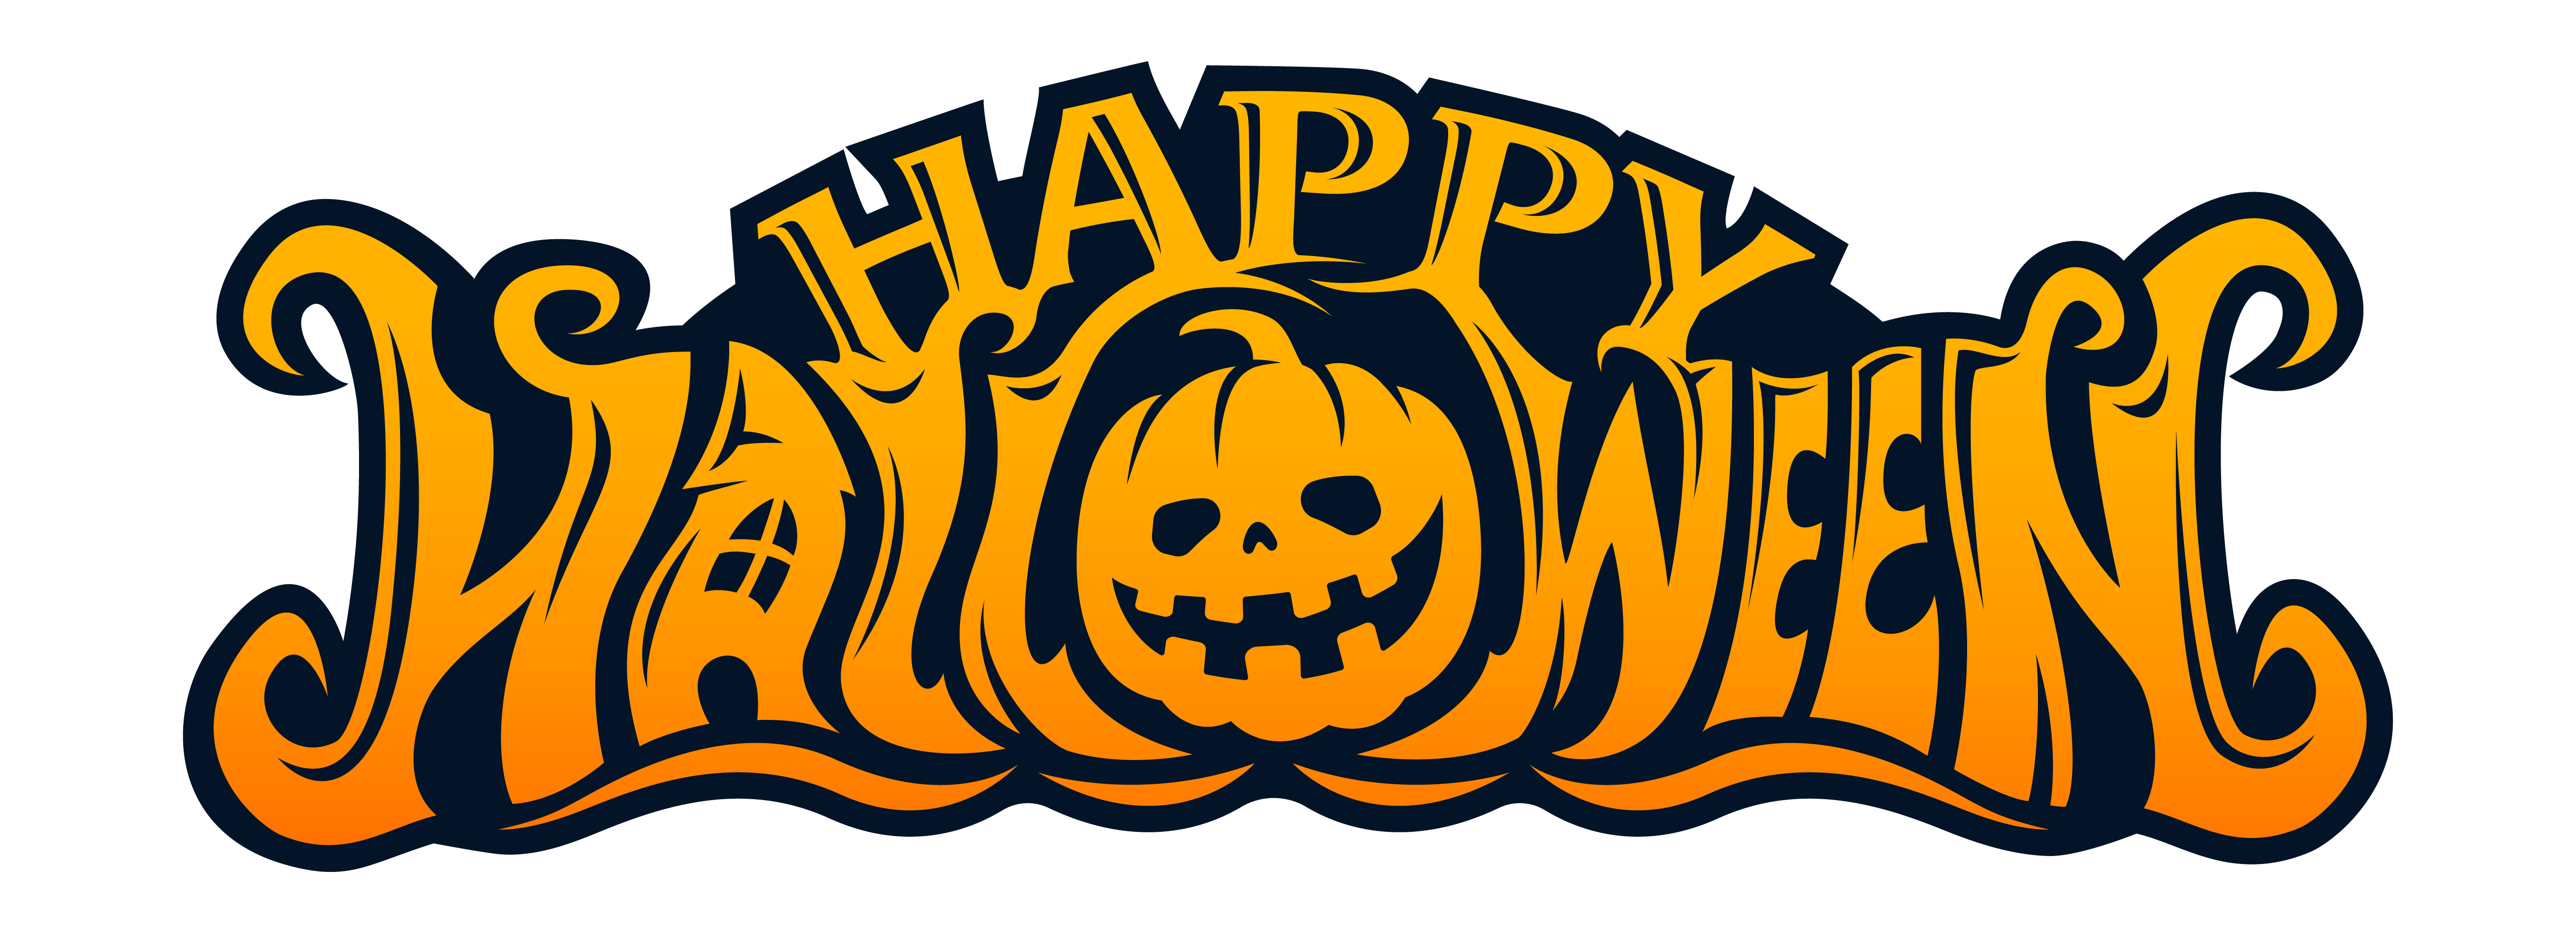 Happy Halloween Pumpkin Head Text design 1271133 Vector Art at Vecteezy